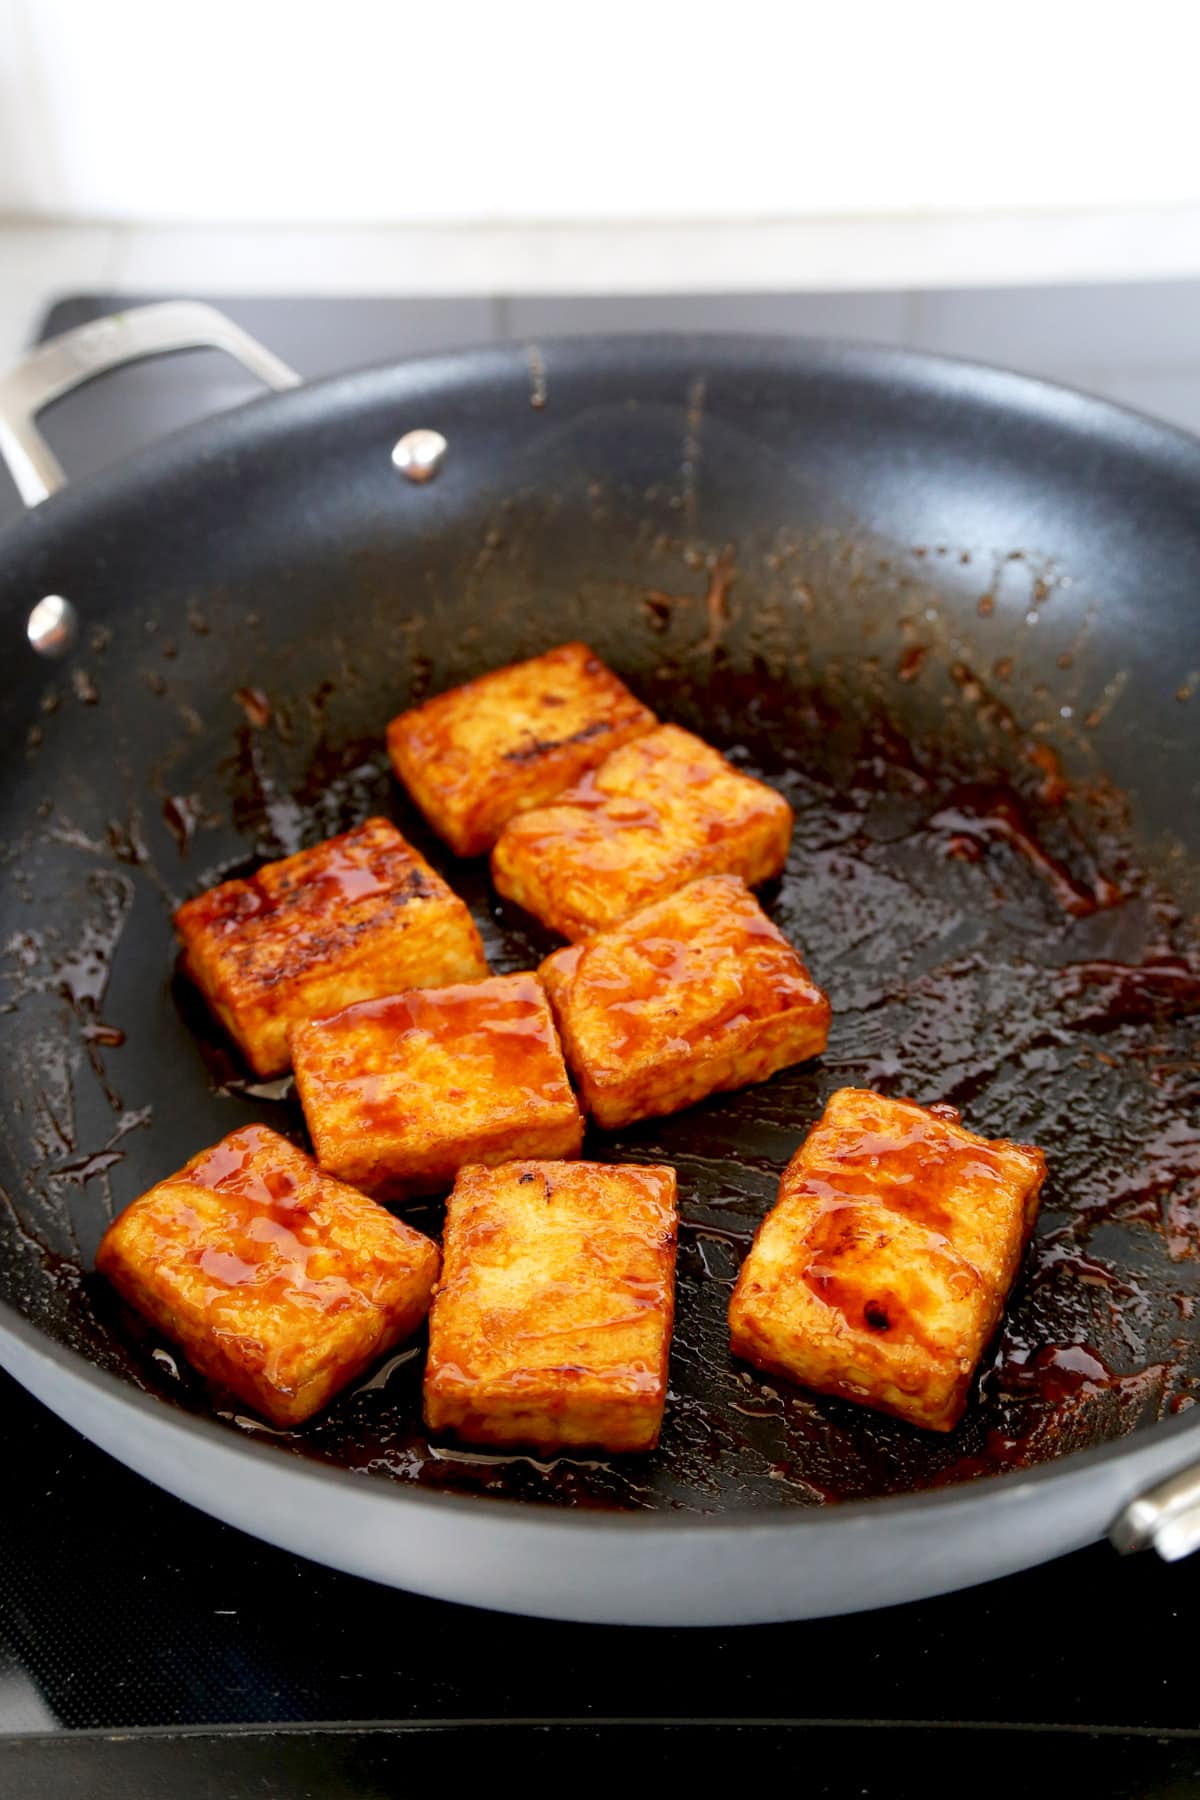 Pan fried tofu steaks